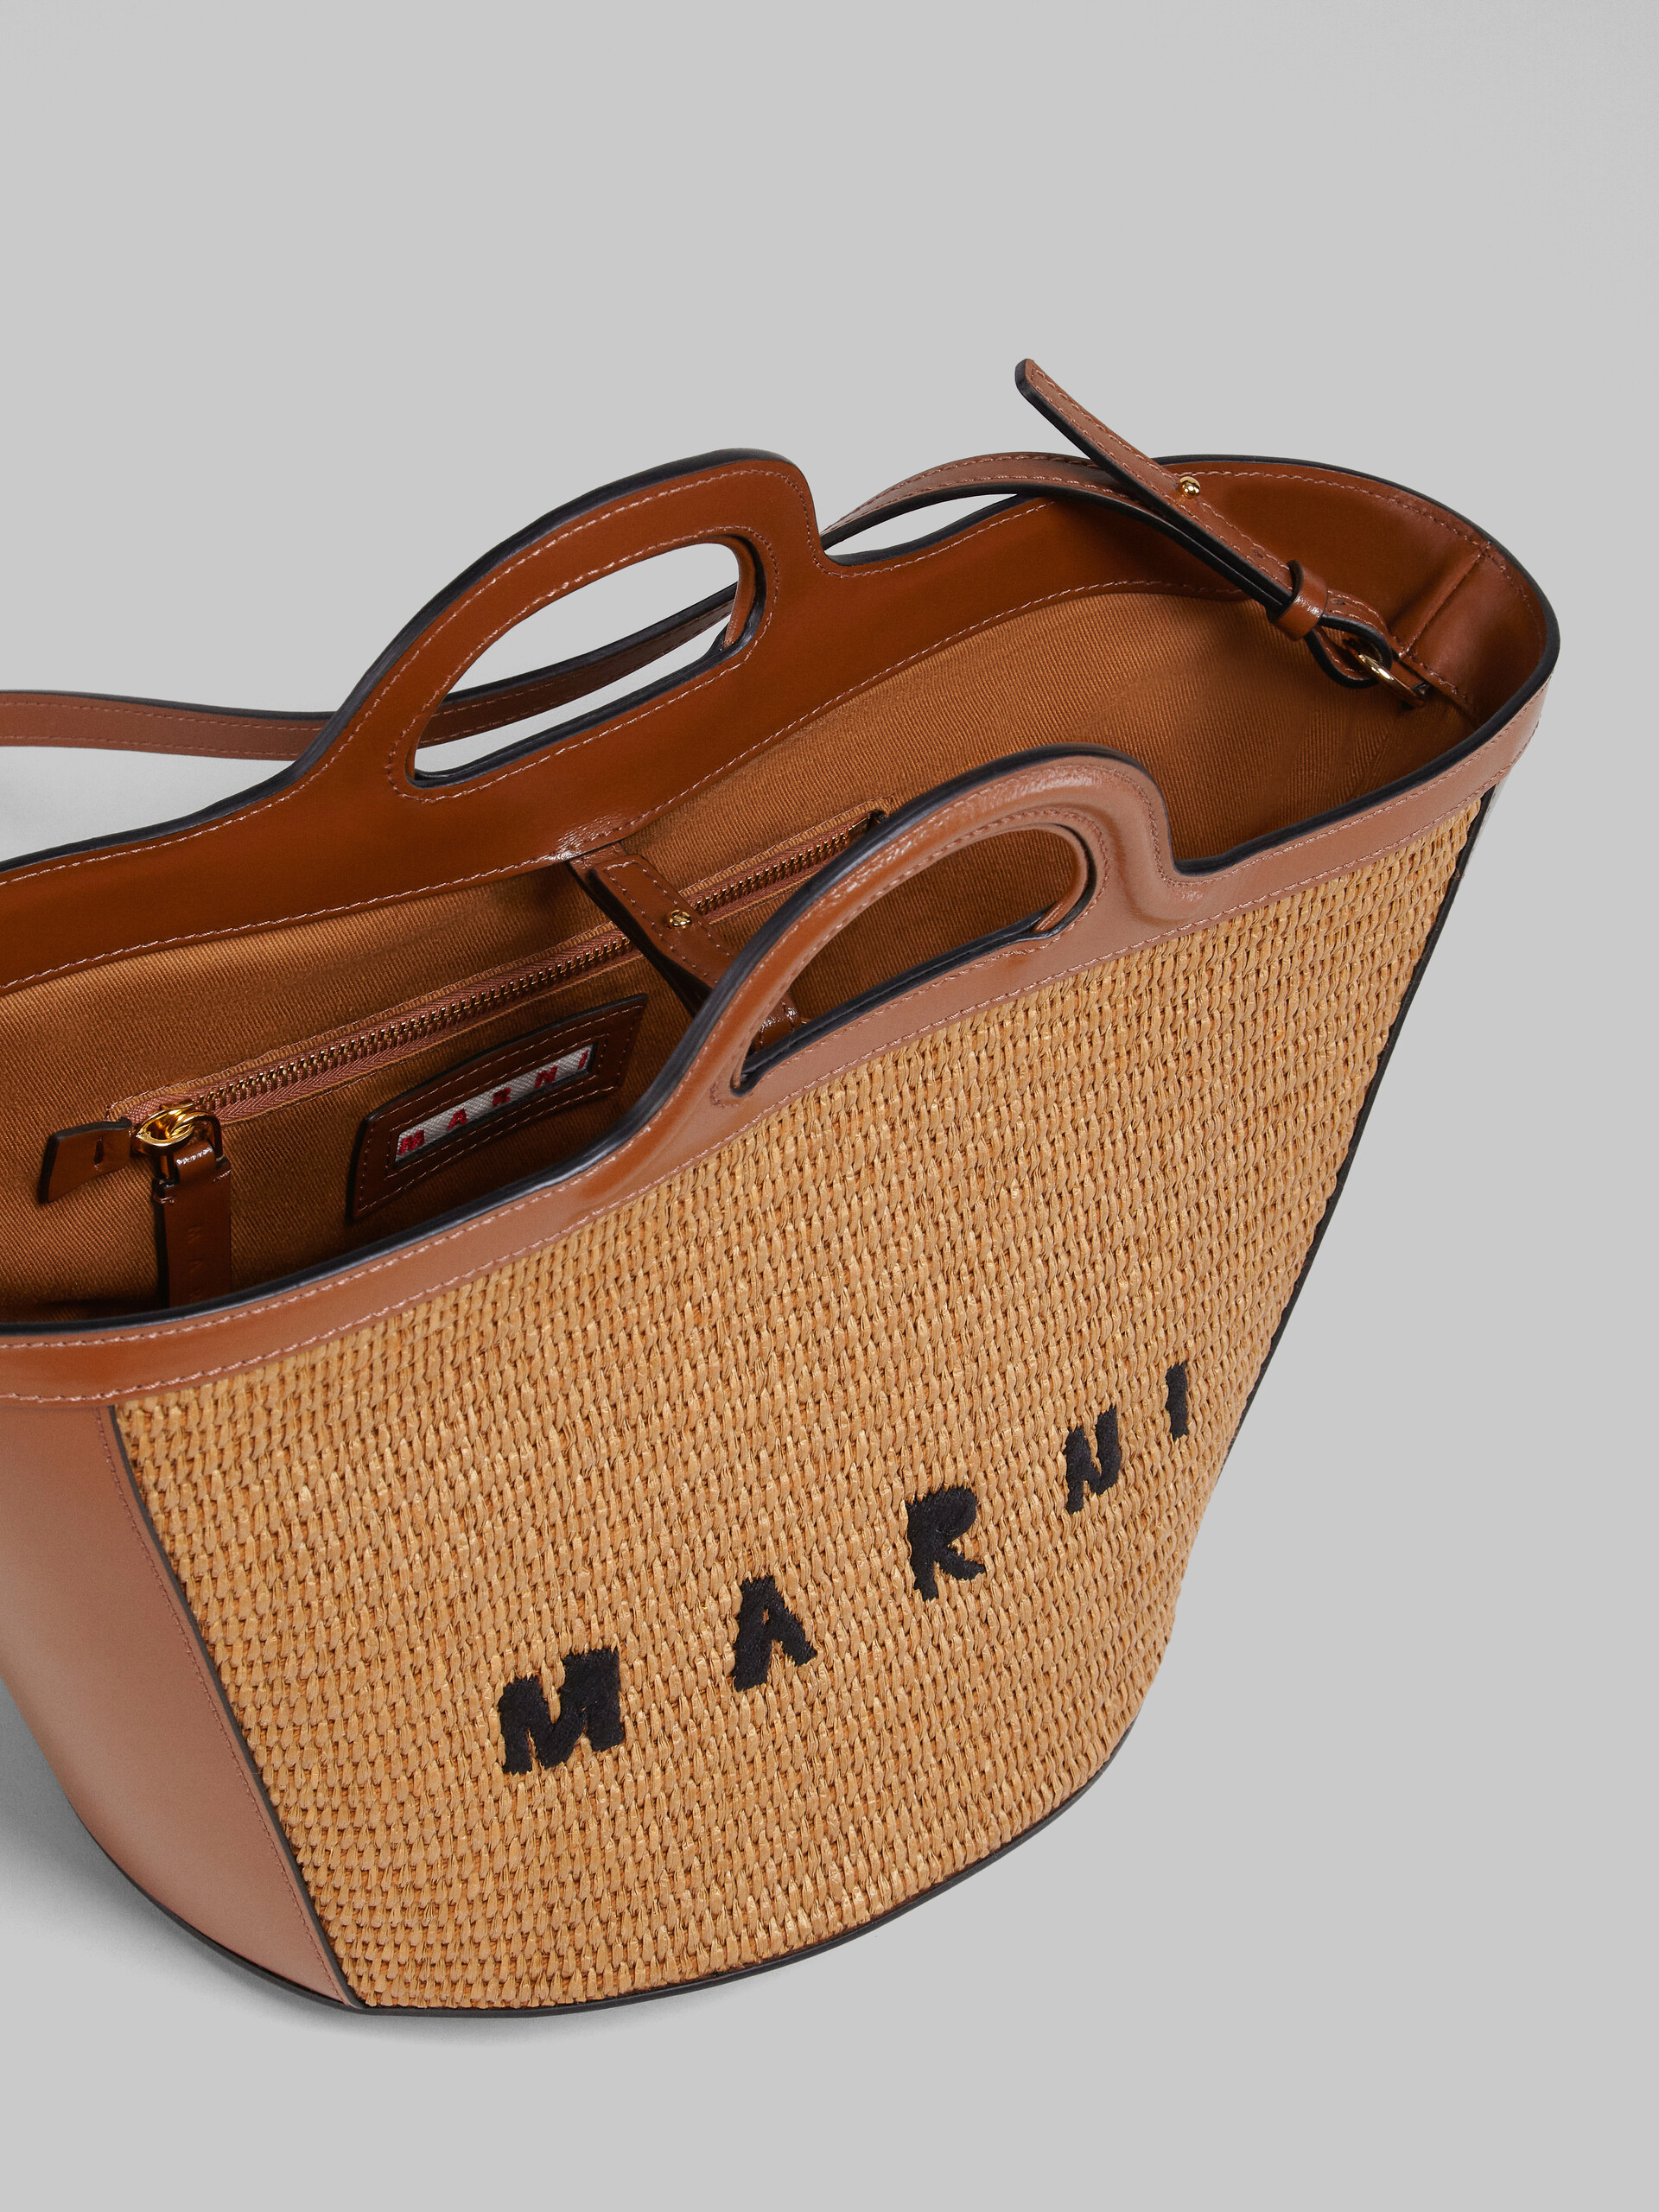 Brown leather small TROPICALIA SUMMER bag - Handbag - Image 5